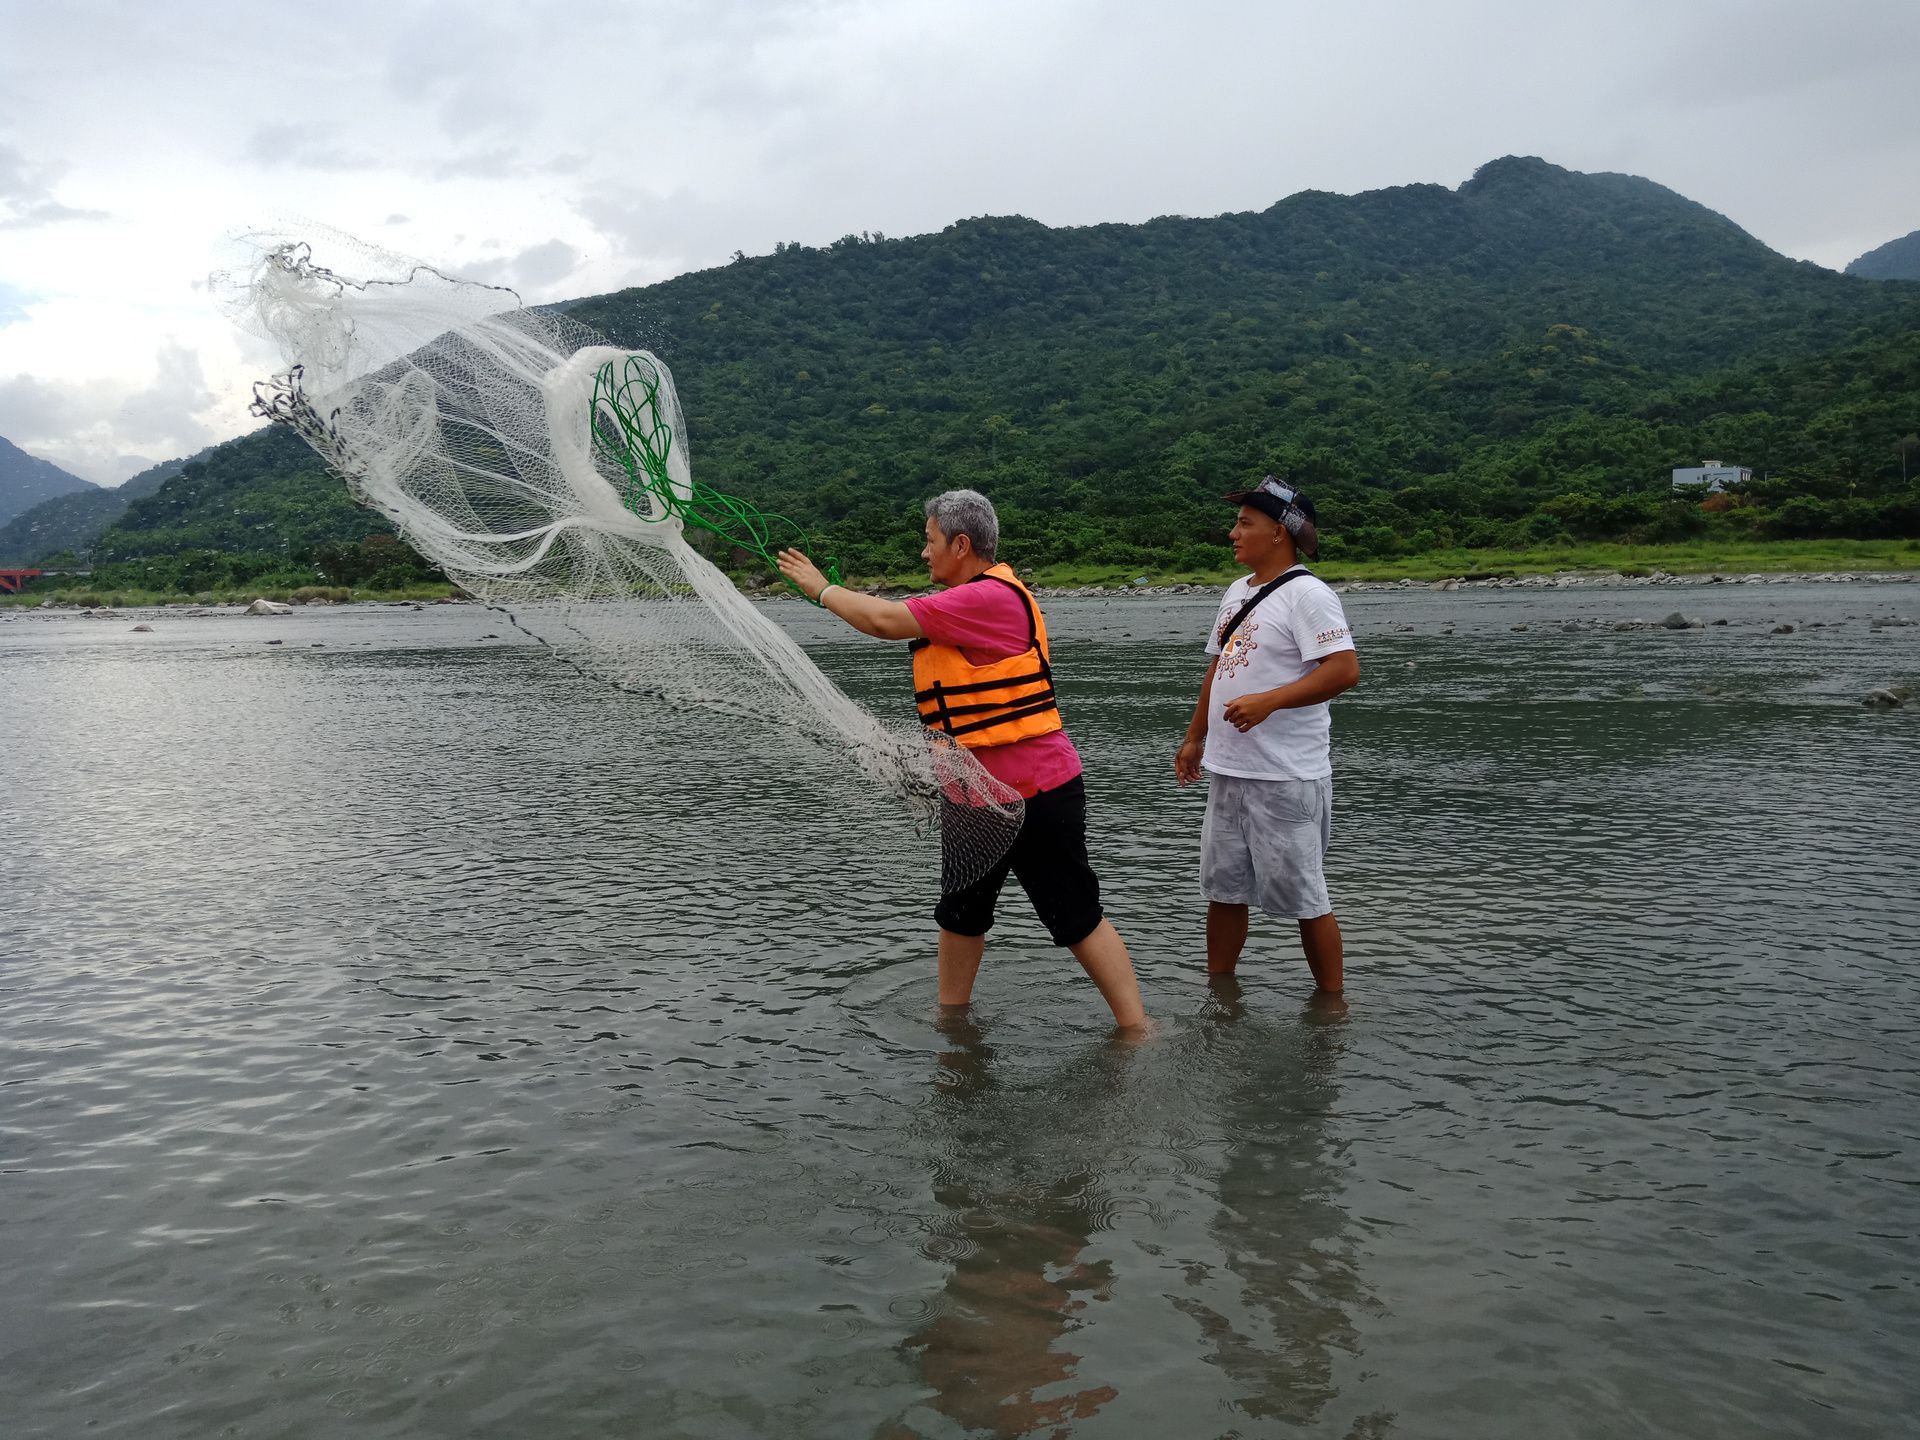 Dr. Nikora教授親身體驗靜浦部落族人撒八卦網捕魚文化